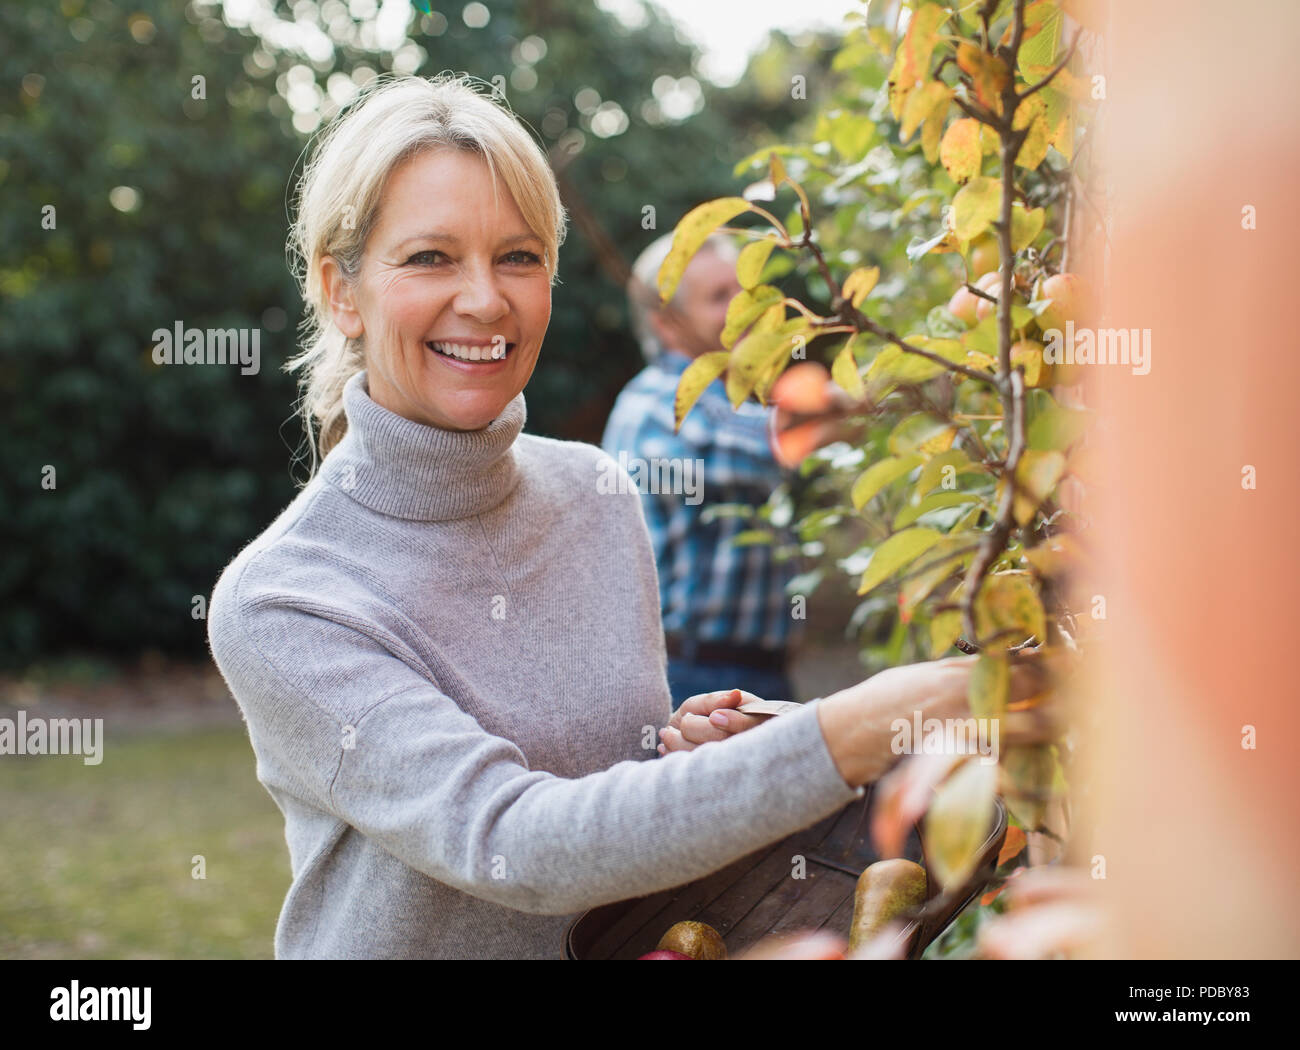 Porträt Lächeln, zuversichtlich, reife Frau ernten Äpfel im Garten Stockfoto